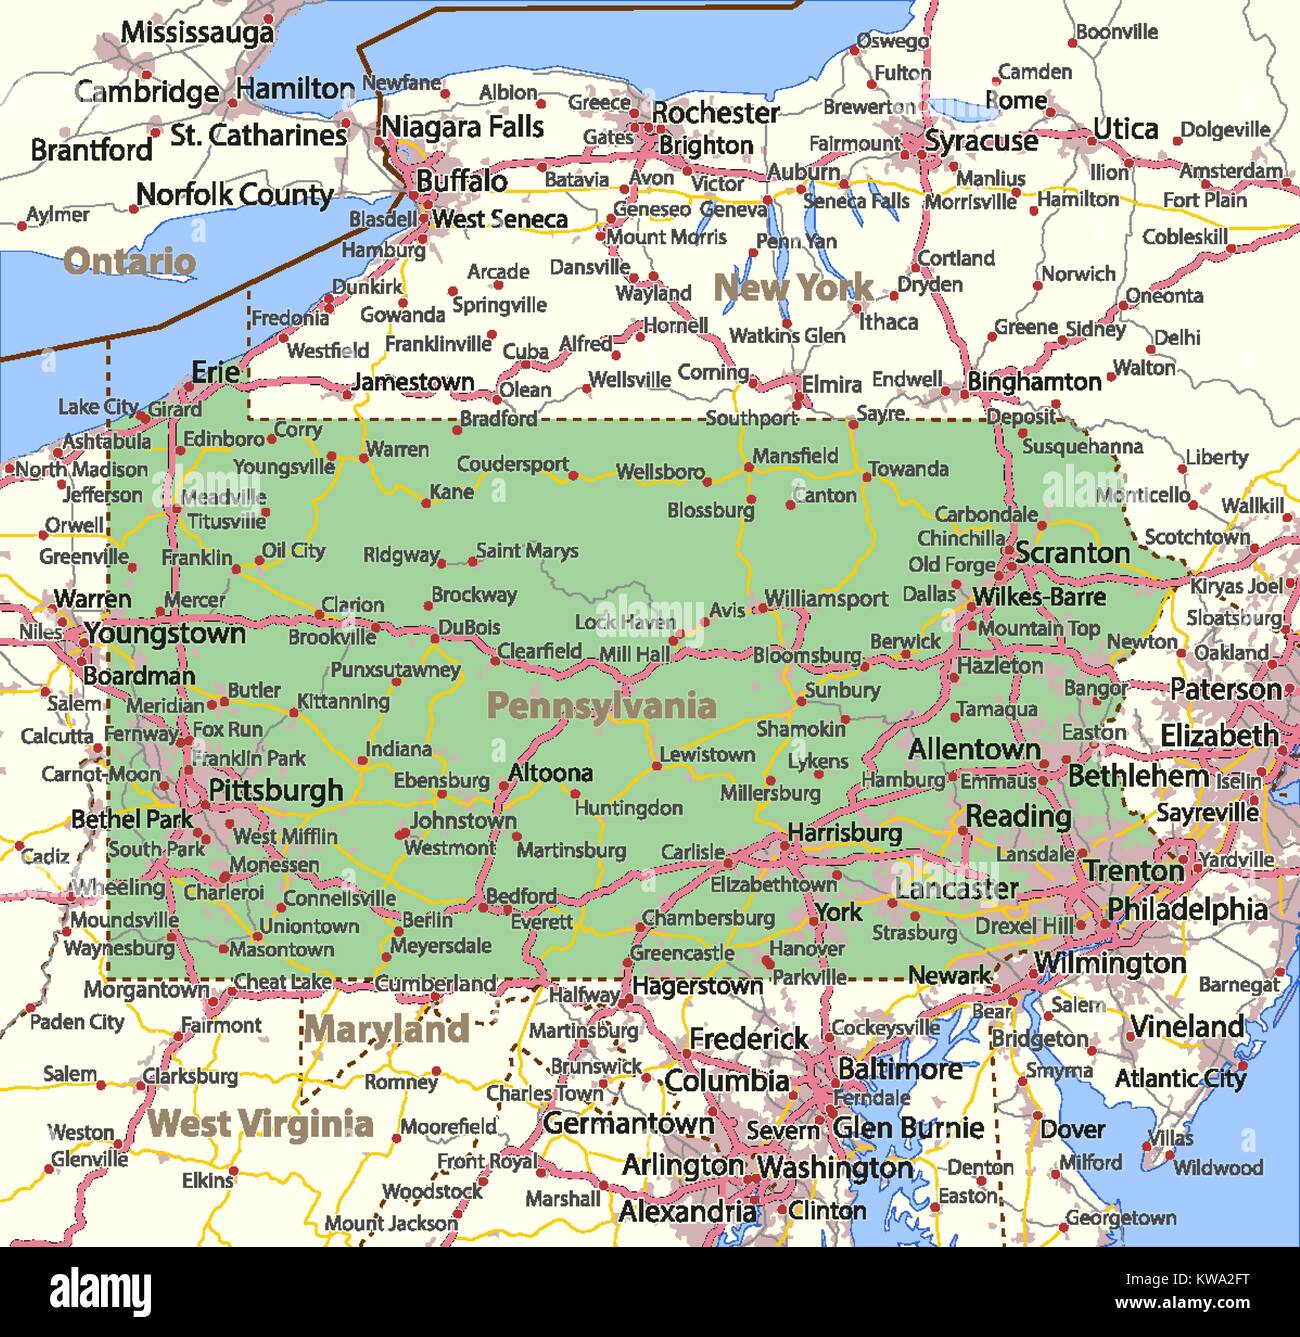 Mappa di Pennsylvania. Mostra i confini, zone urbane, nomi di località, strade e autostrade. Proiezione: proiezione di Mercatore. Illustrazione Vettoriale